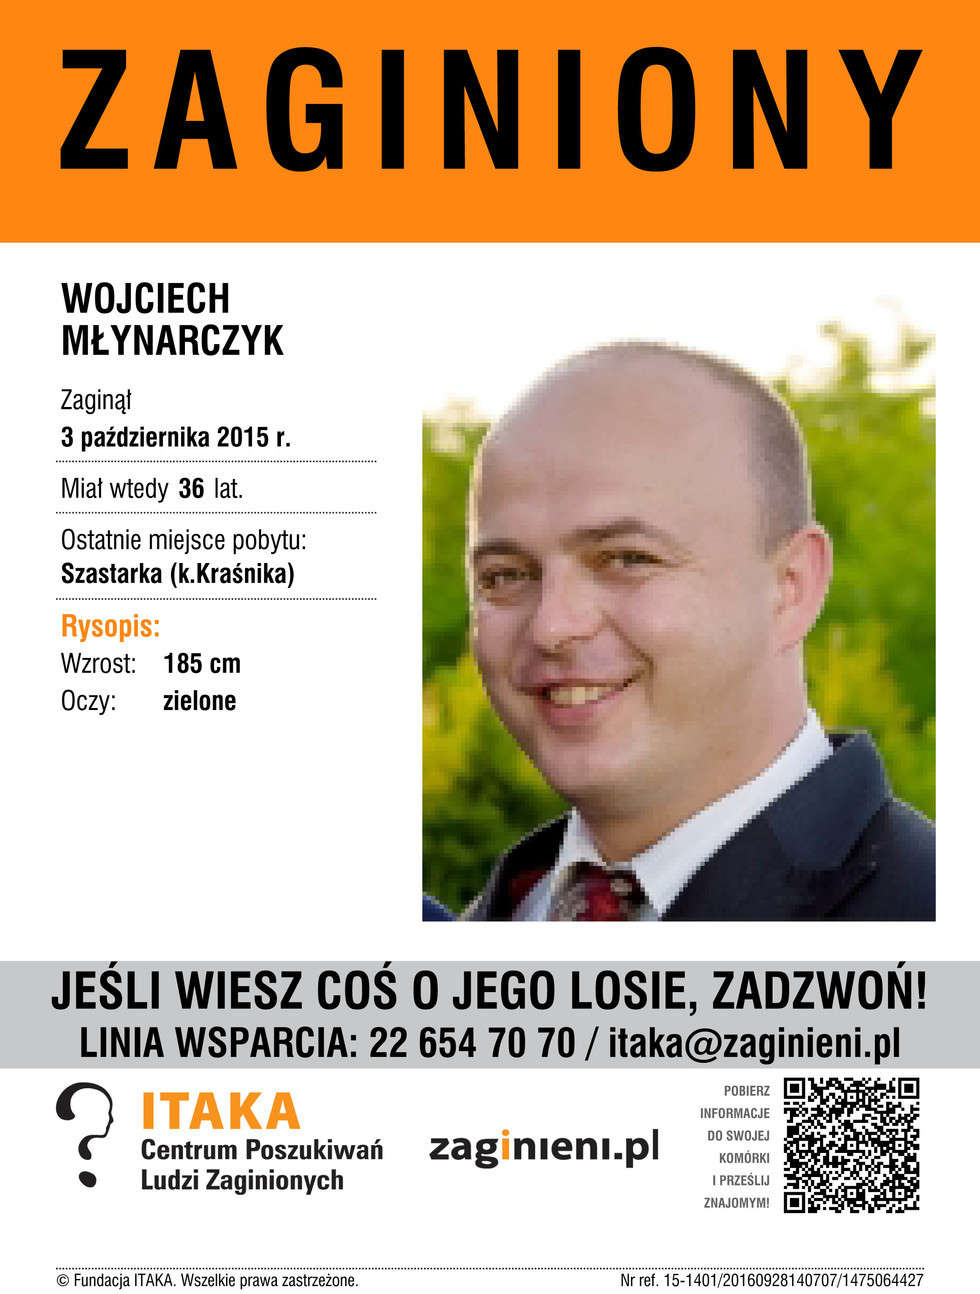  <p>Wojciech Młynarczyk</p>